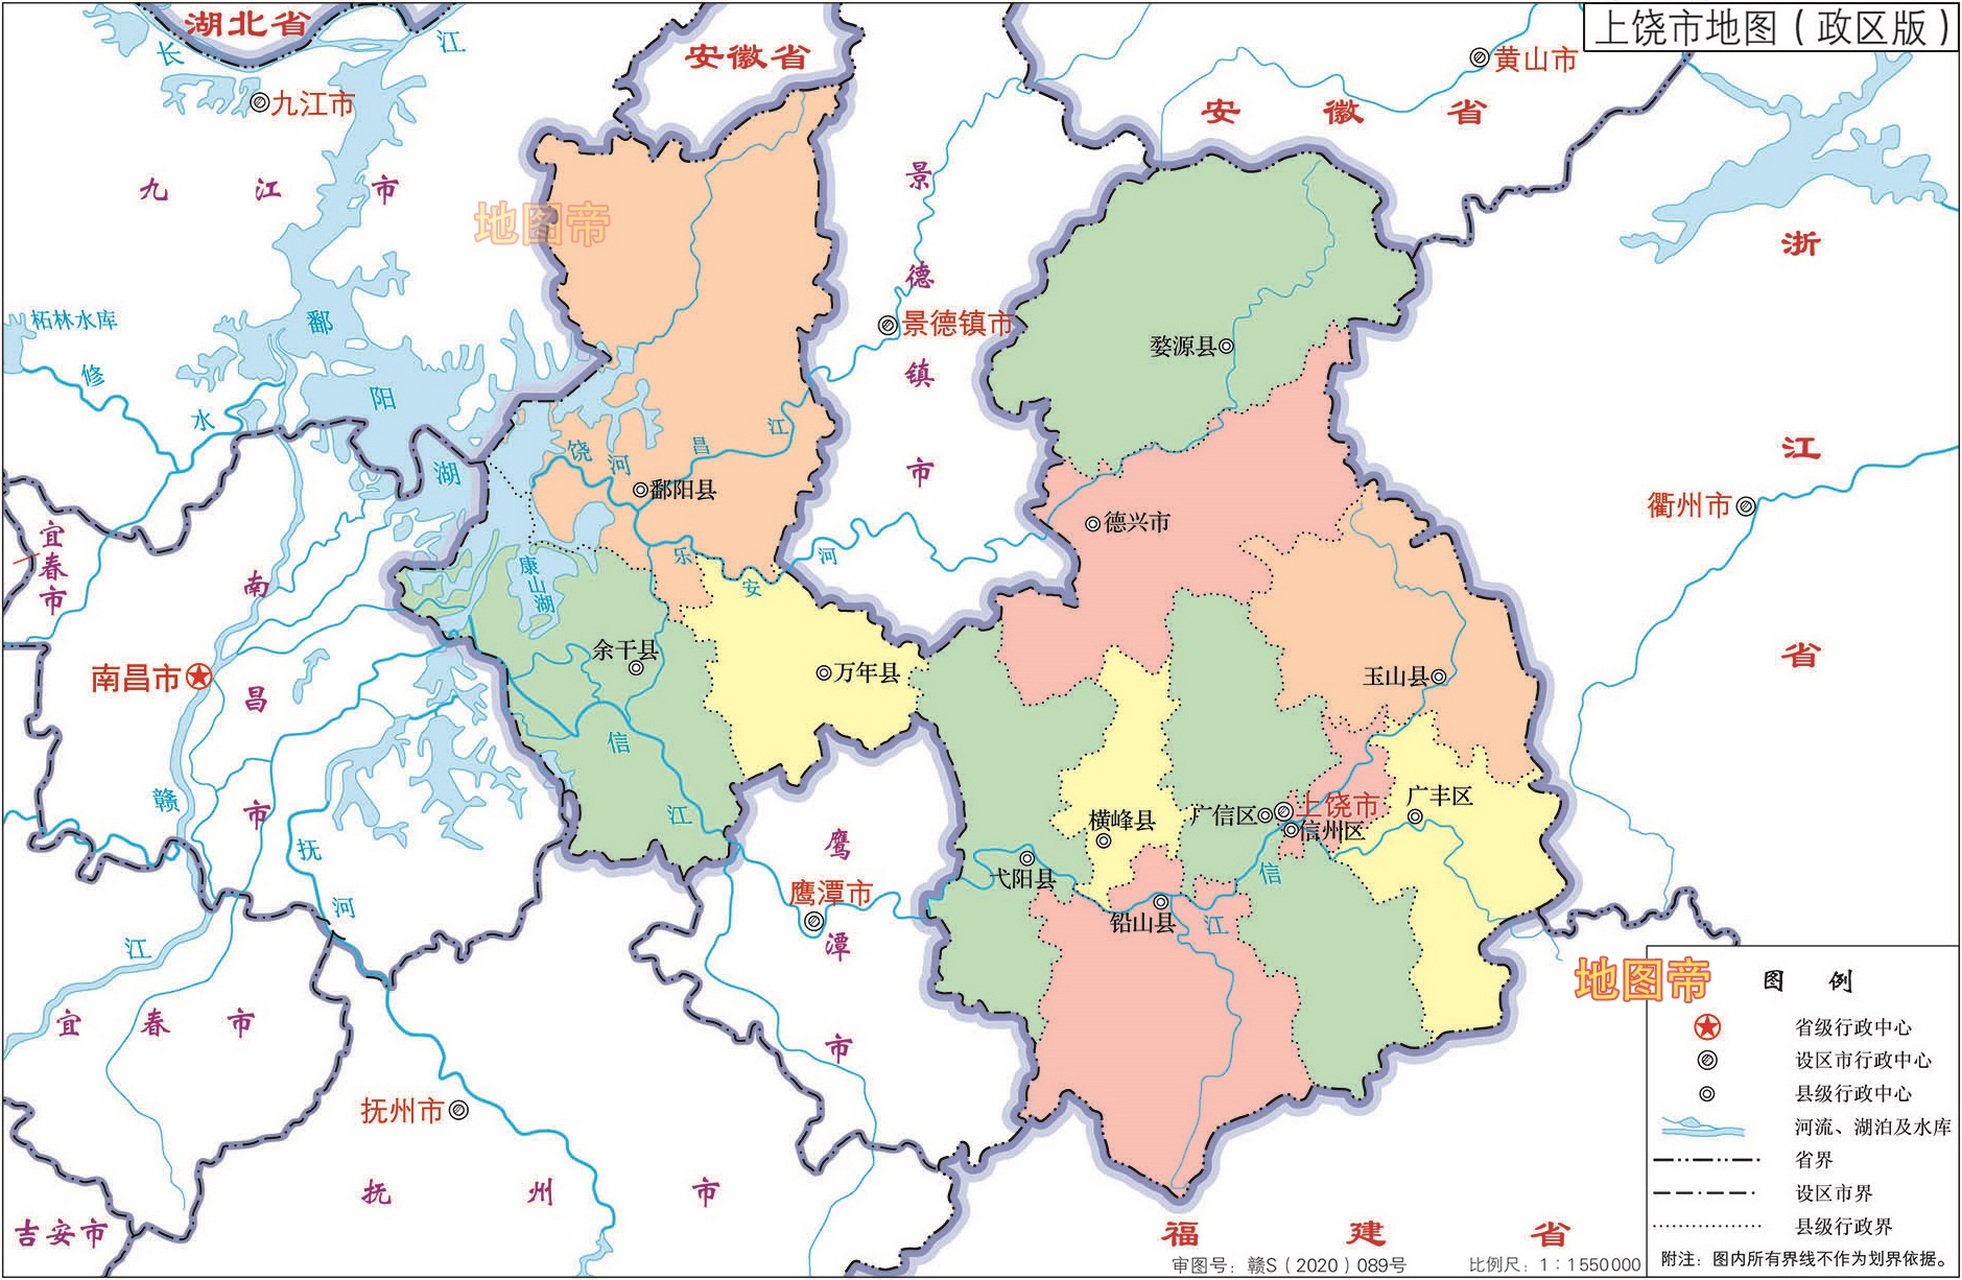 【上饶地图怪,真像小猫戏奶奶 江西省上饶市的地图轮廓很有意思